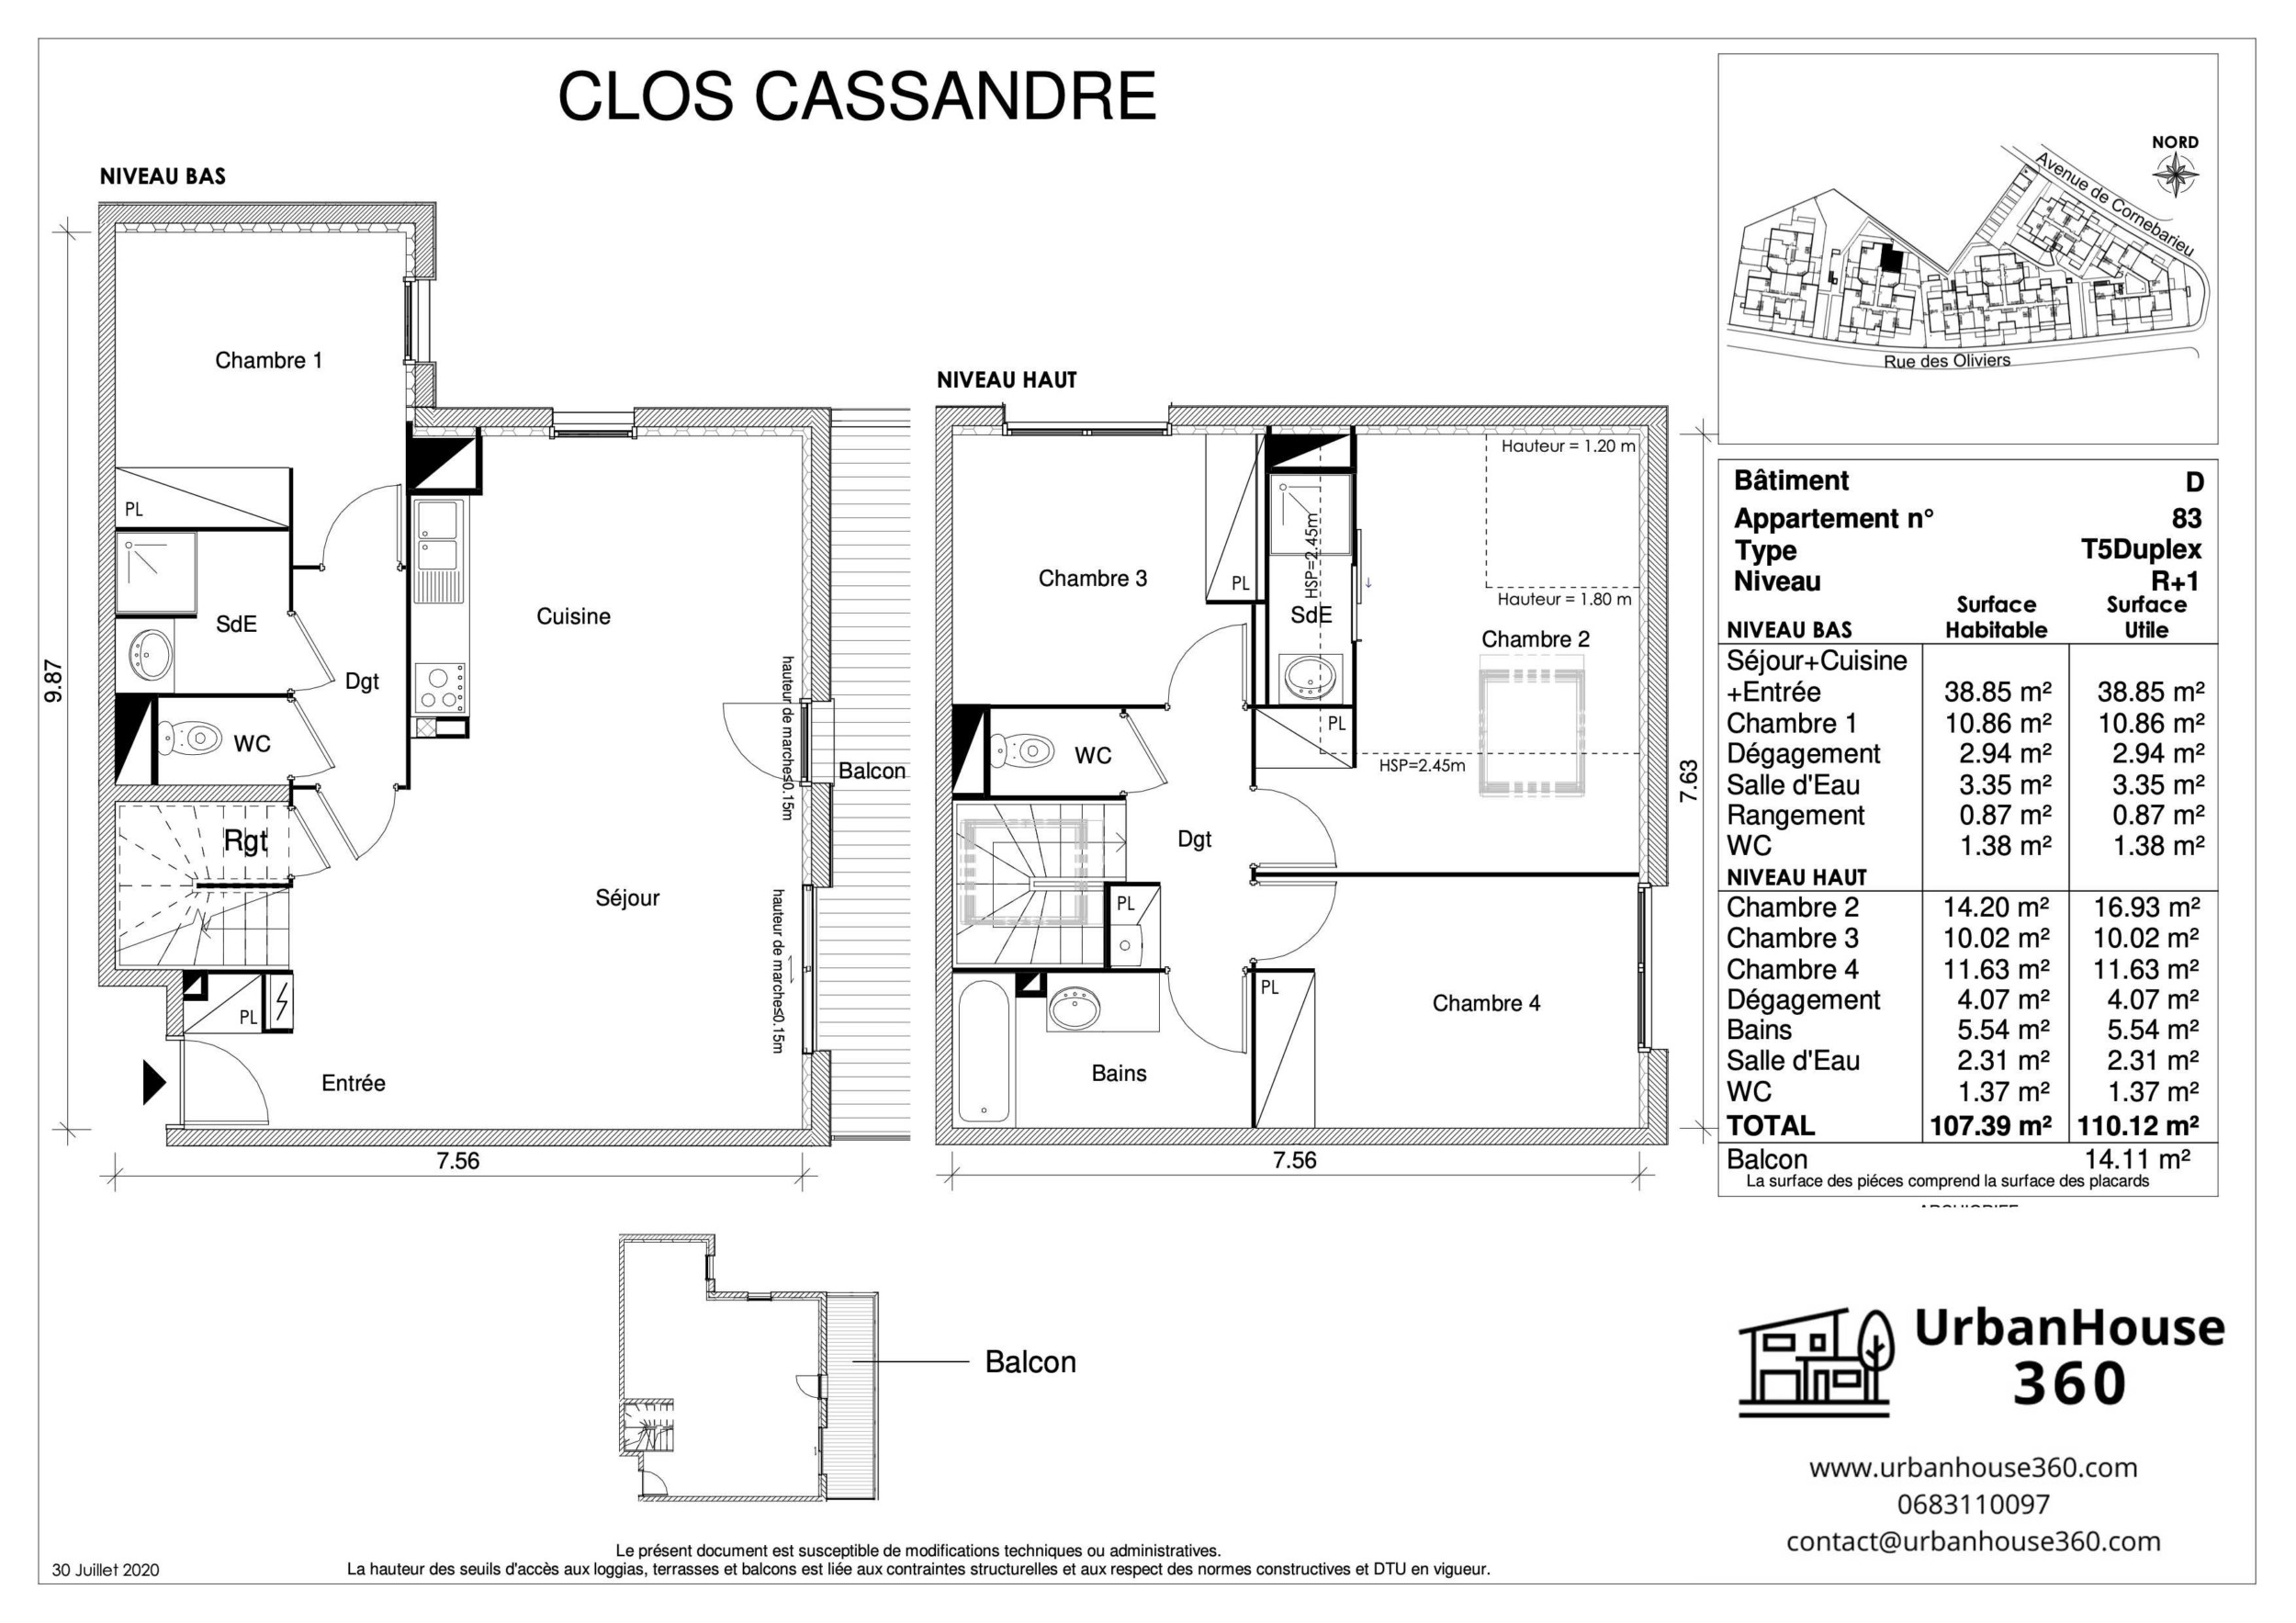 UrbanHouse360-Clos-Cassandre-Plans-2D-T5Duplex